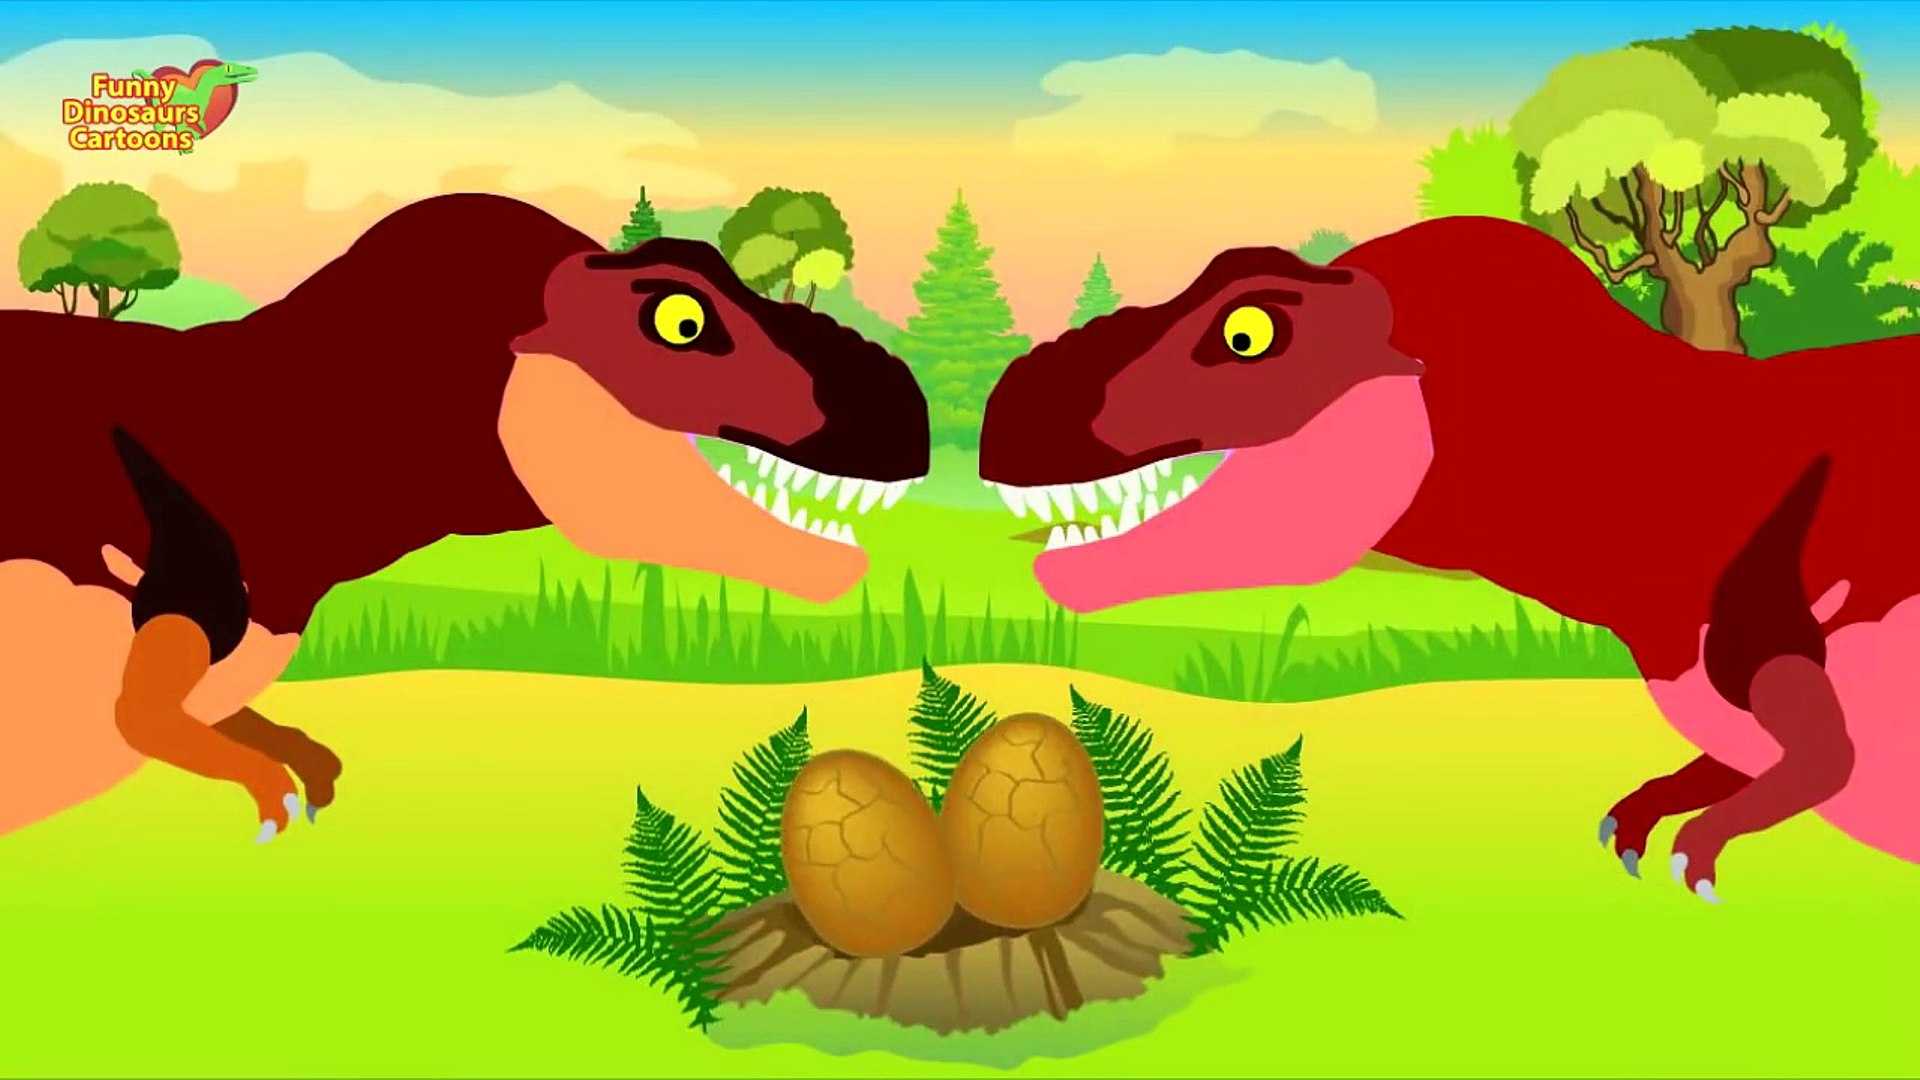 13 интересных мультфильмов про динозавров